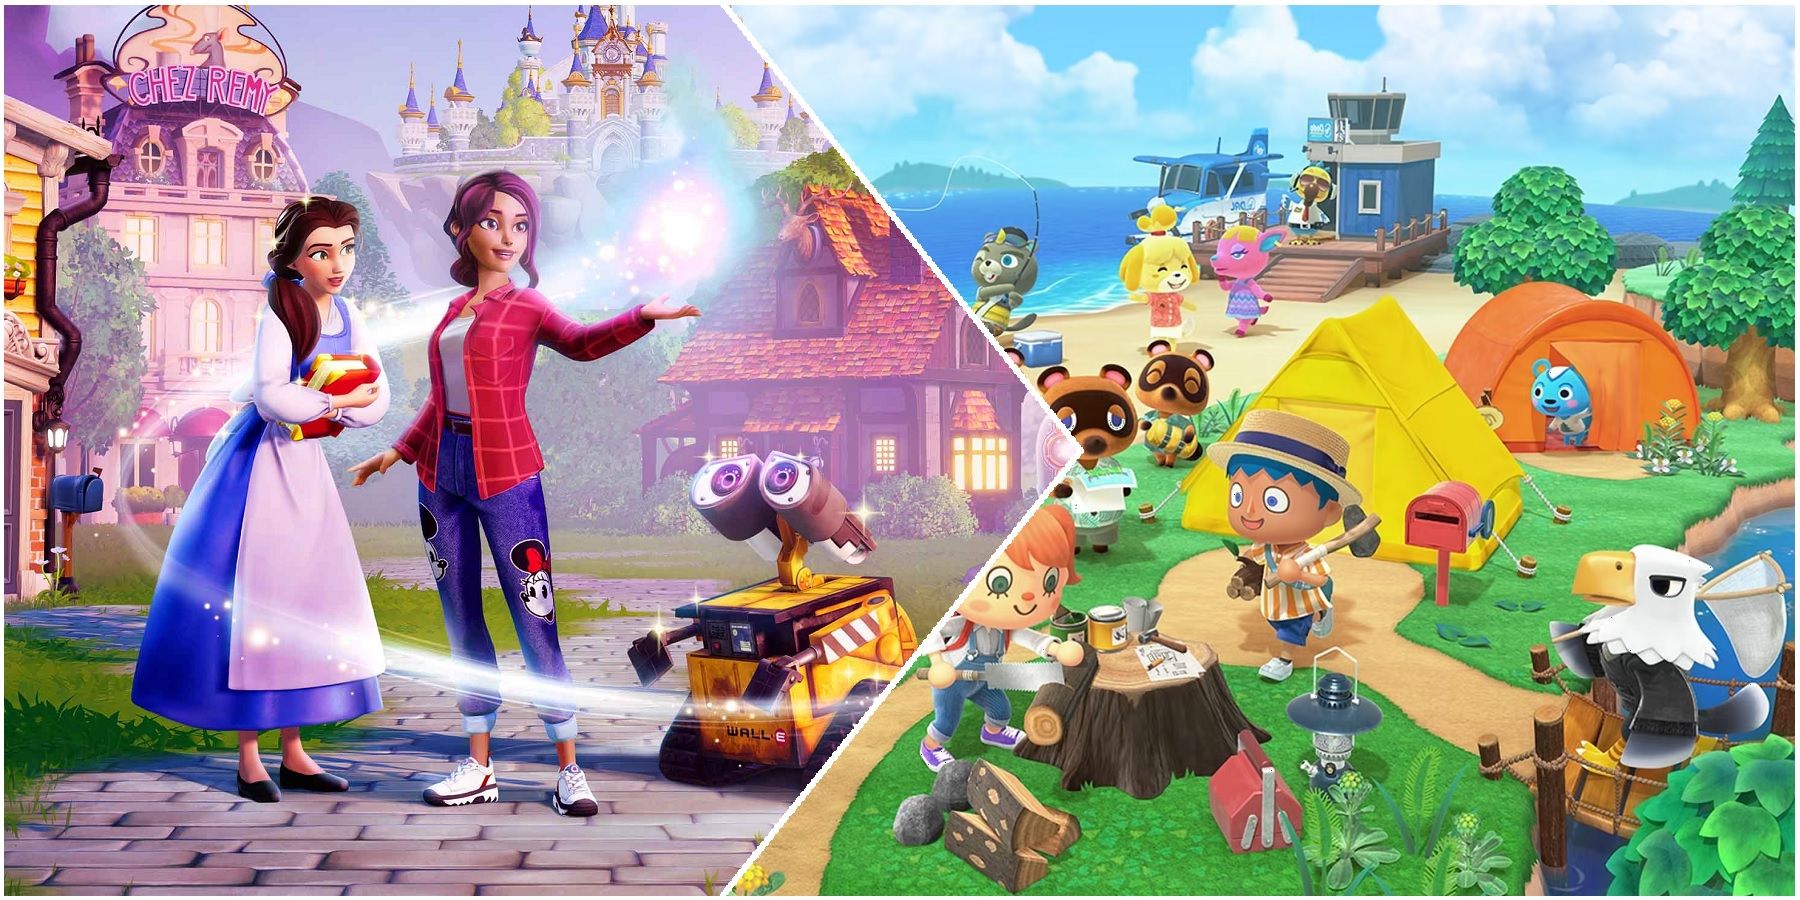 Disney Dreamlight Valley udaje się pokonać Crossing Animal: Nowe horyzonty w jeden kluczowy sposób, ale może to być gorsze dla graczy